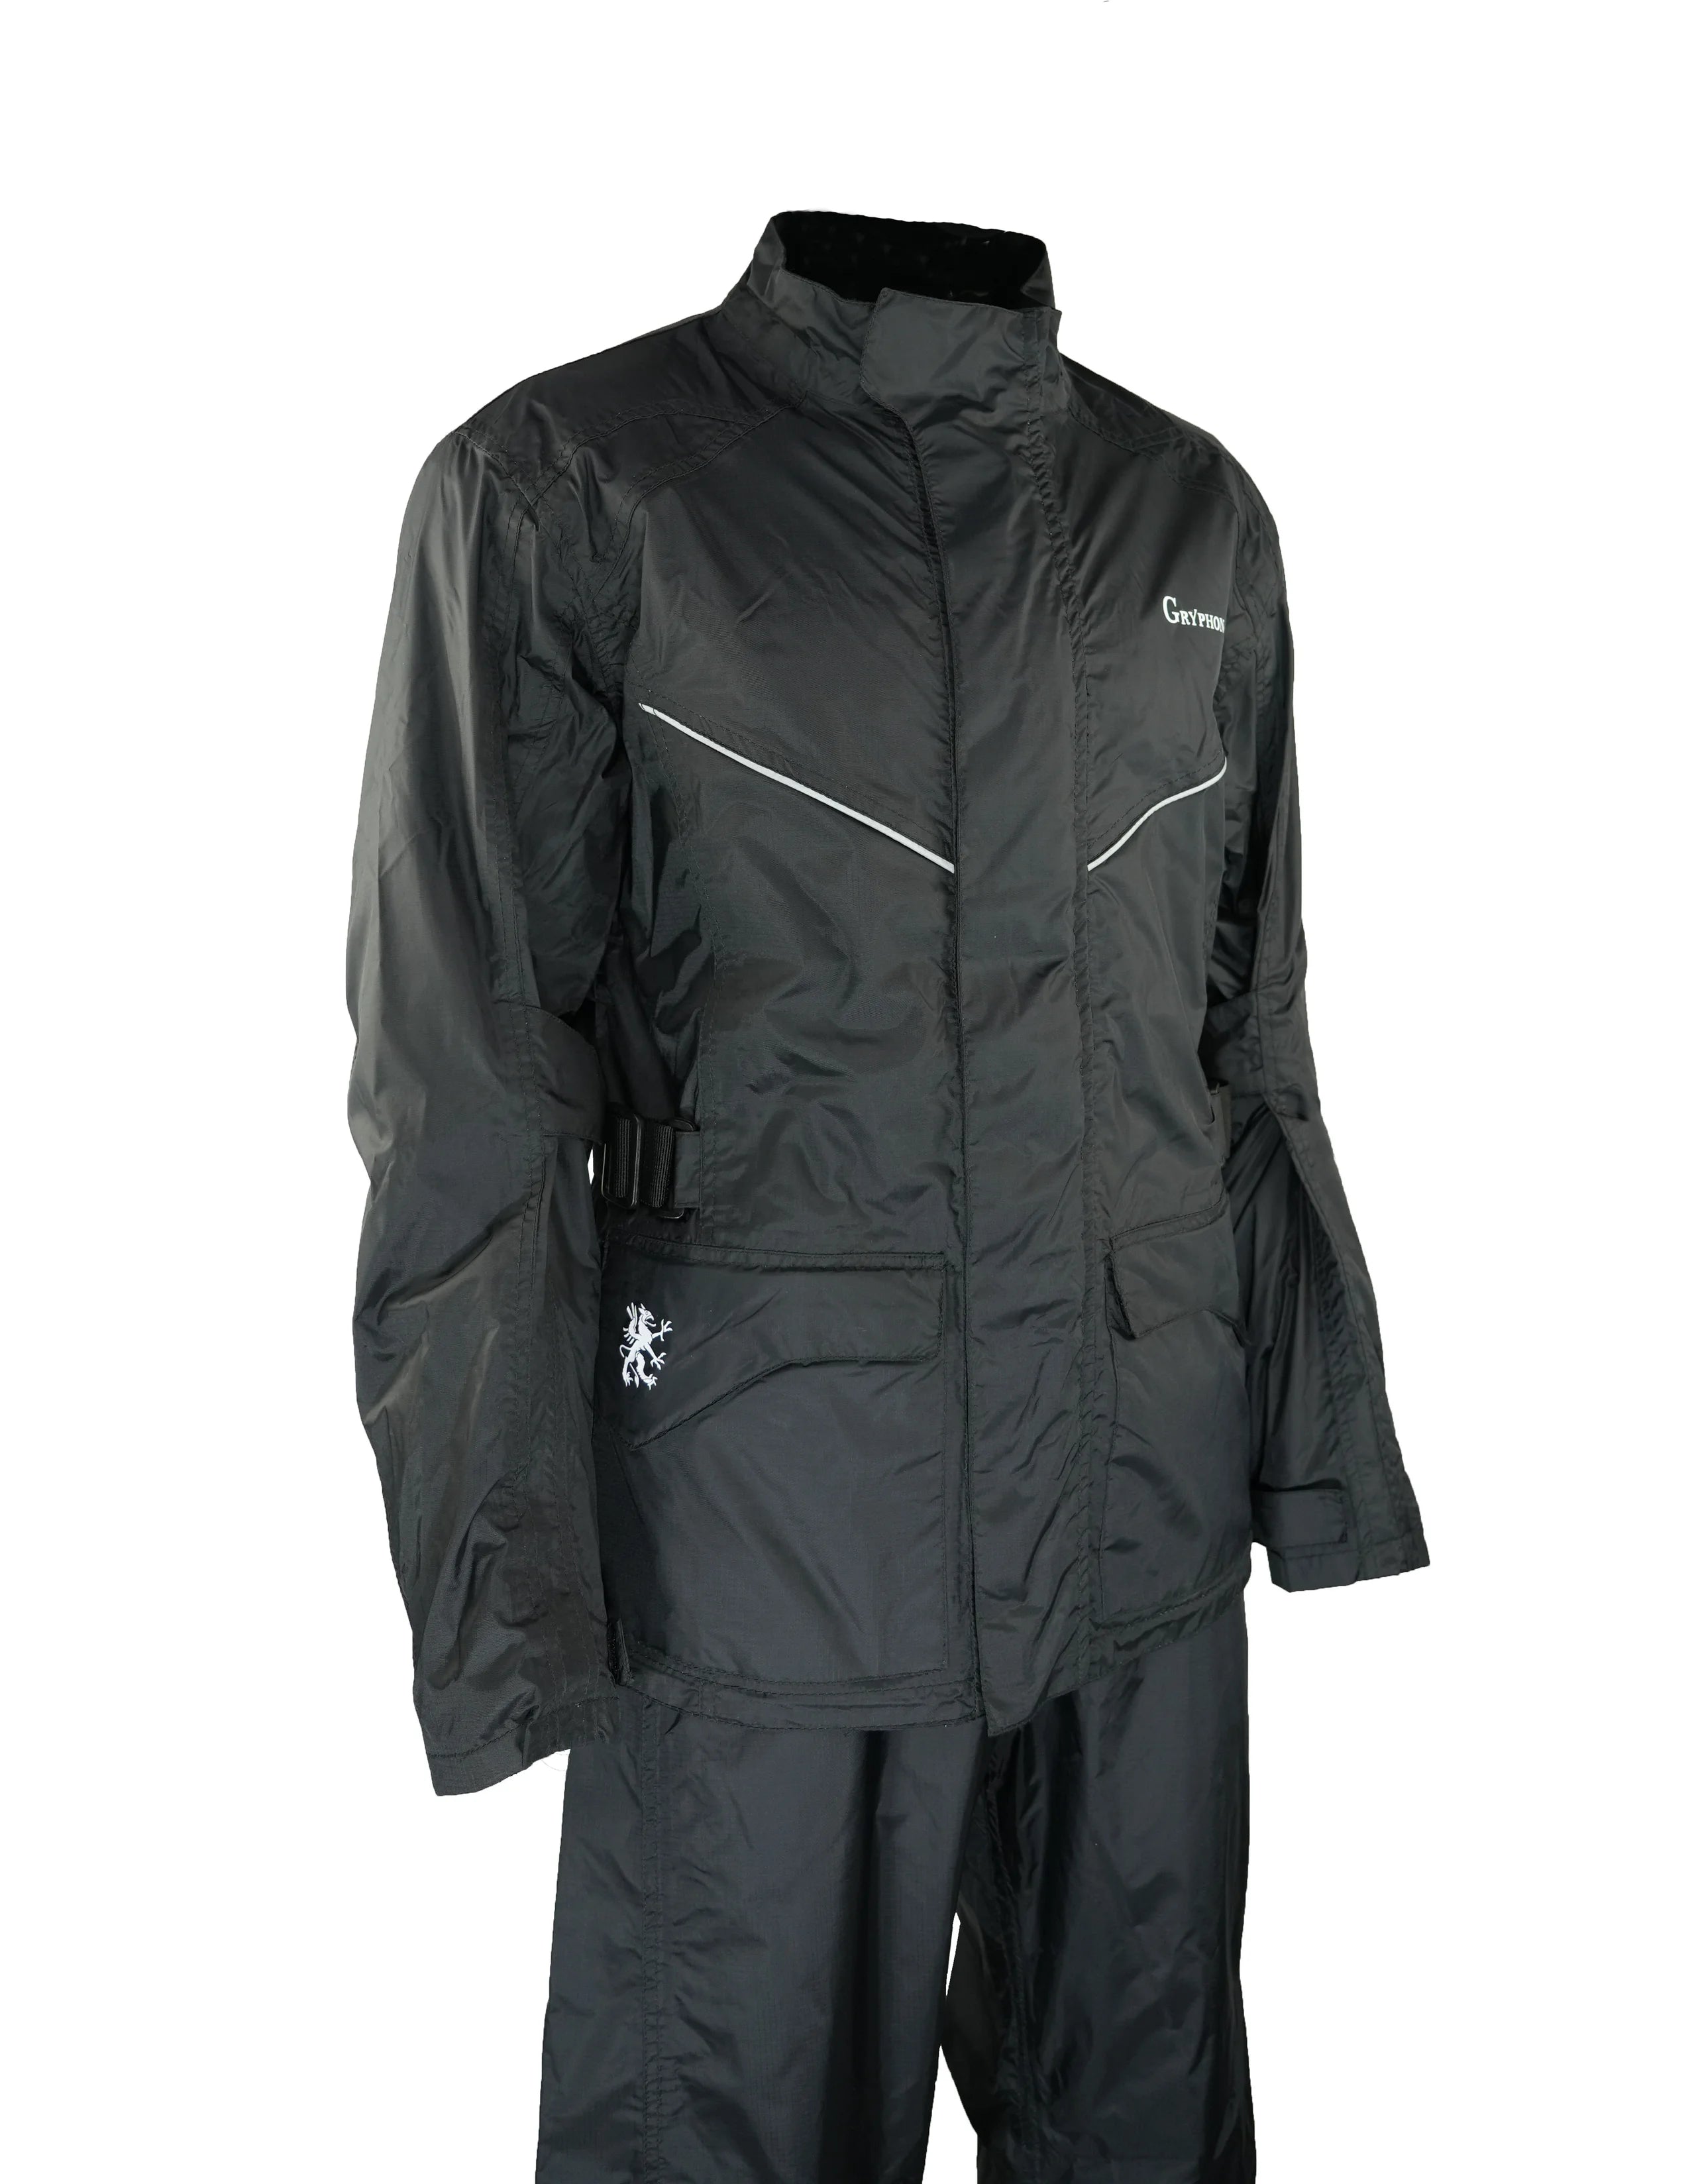 GRYPHON Octane Rain Jacket - BLACK